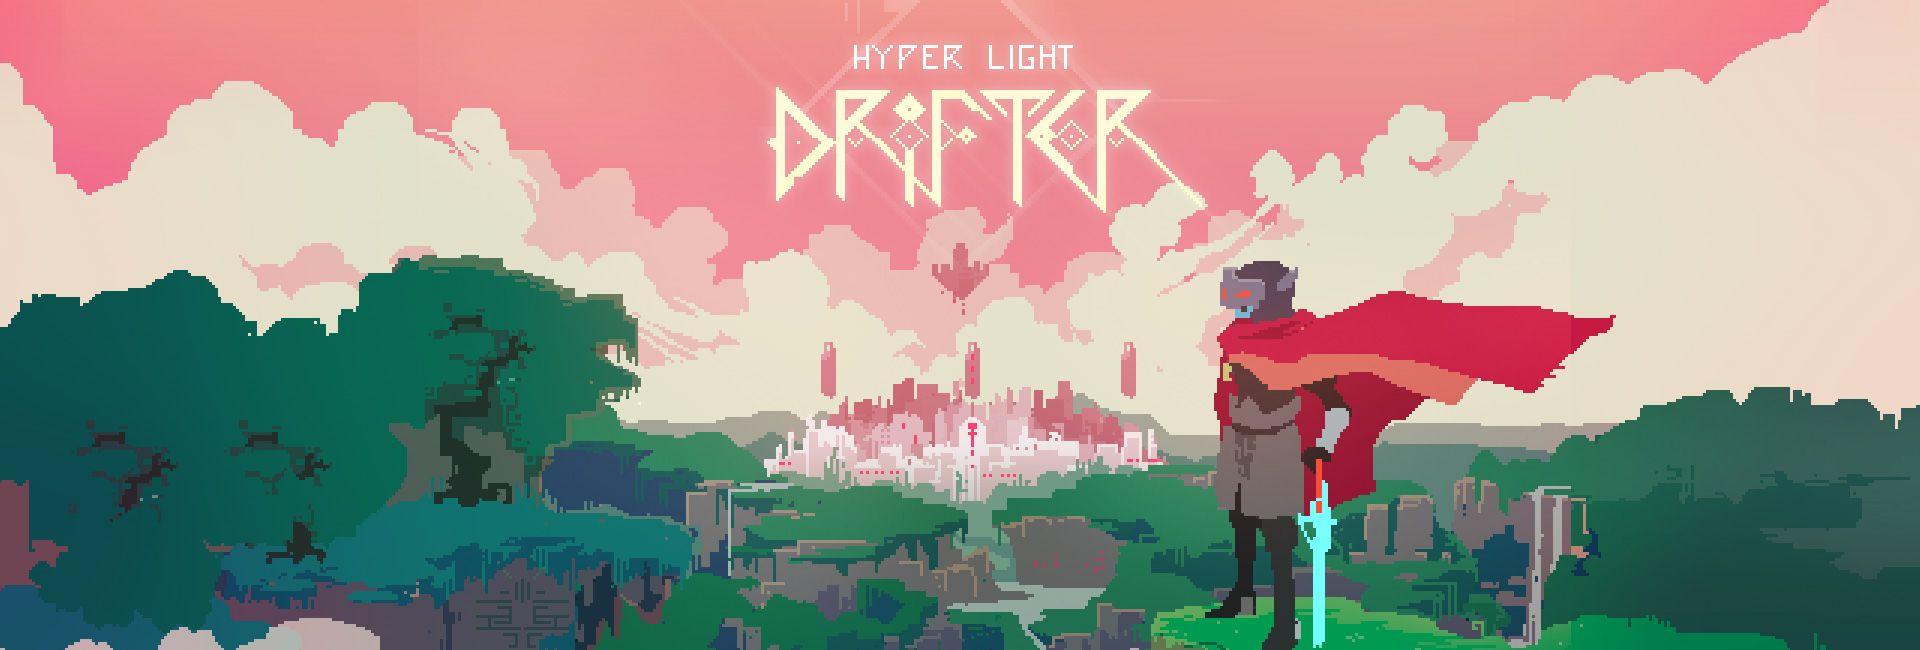 Hyper Light Drifter Desktop Wallpaper by RosePriince on DeviantArt